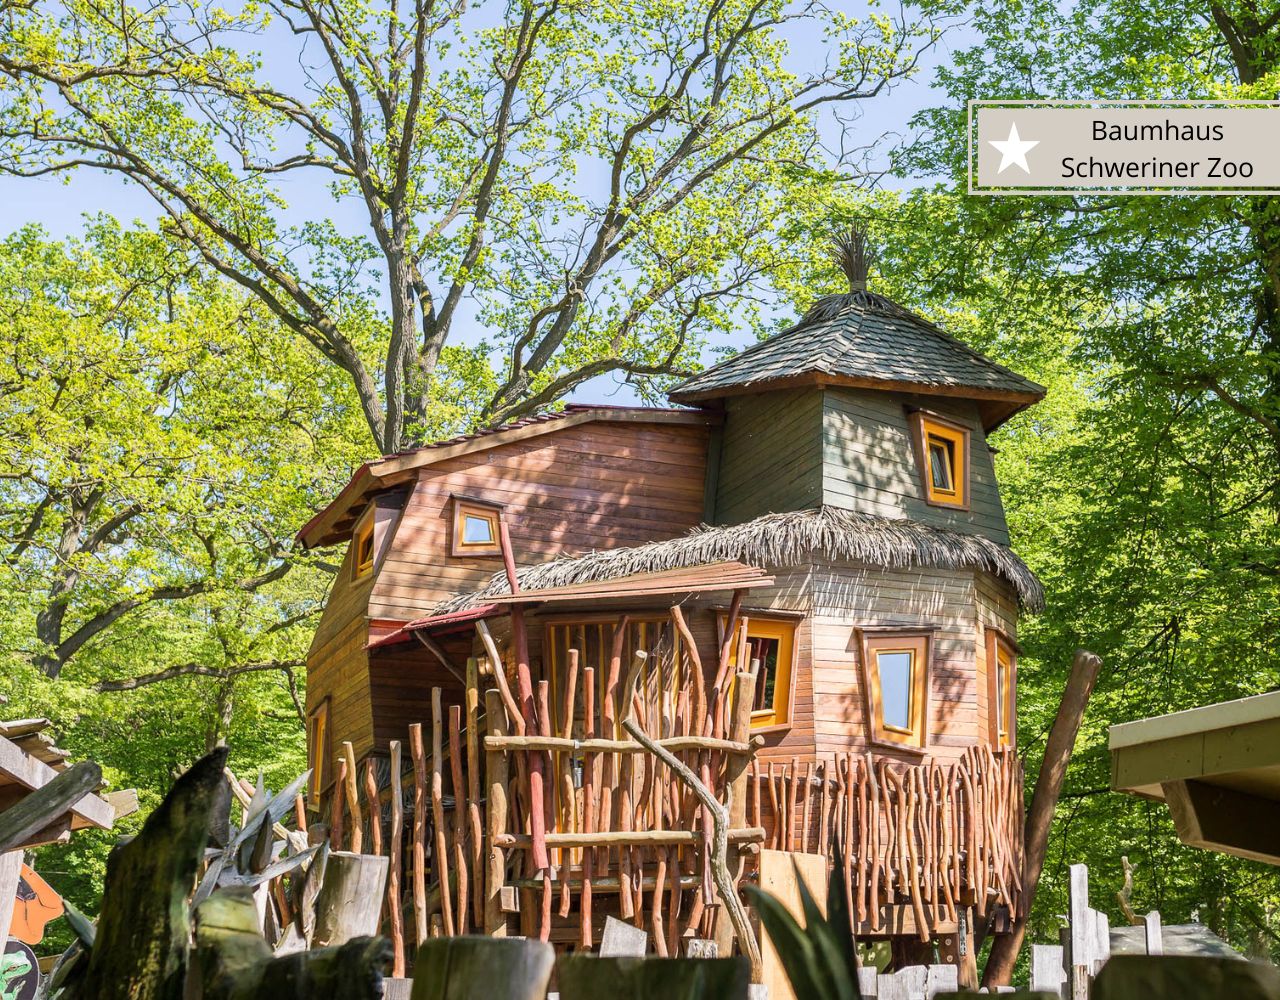 Die schönsten Baumhaus-Übernachtungen in DeutschlandSchweriner Zoo